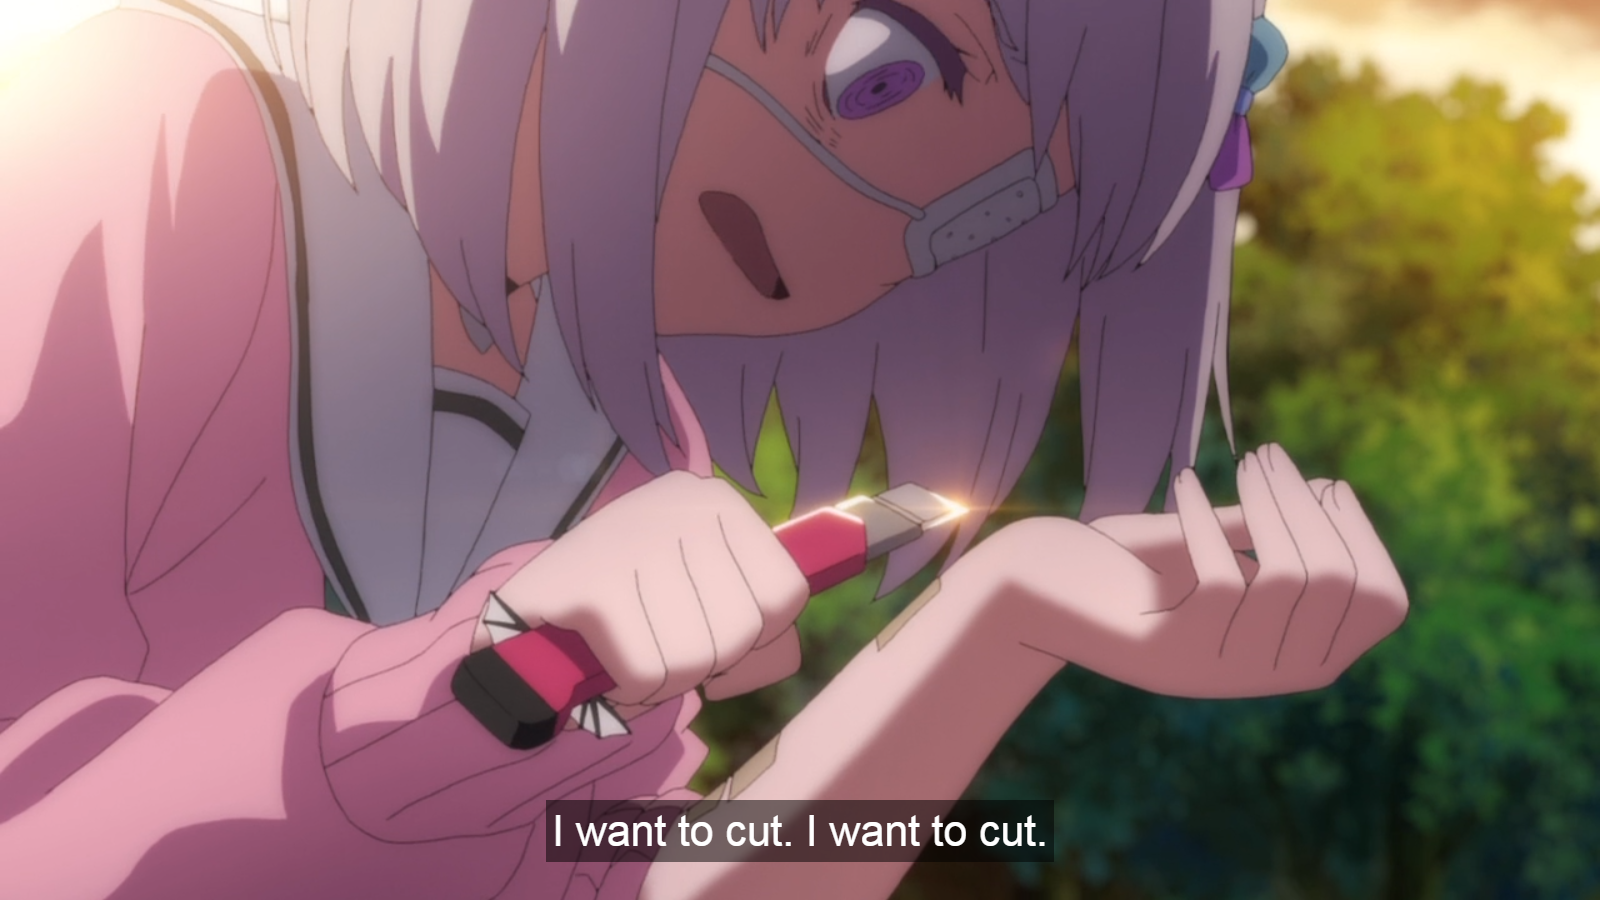 Anime Girl Cutting Herself cock cfnm